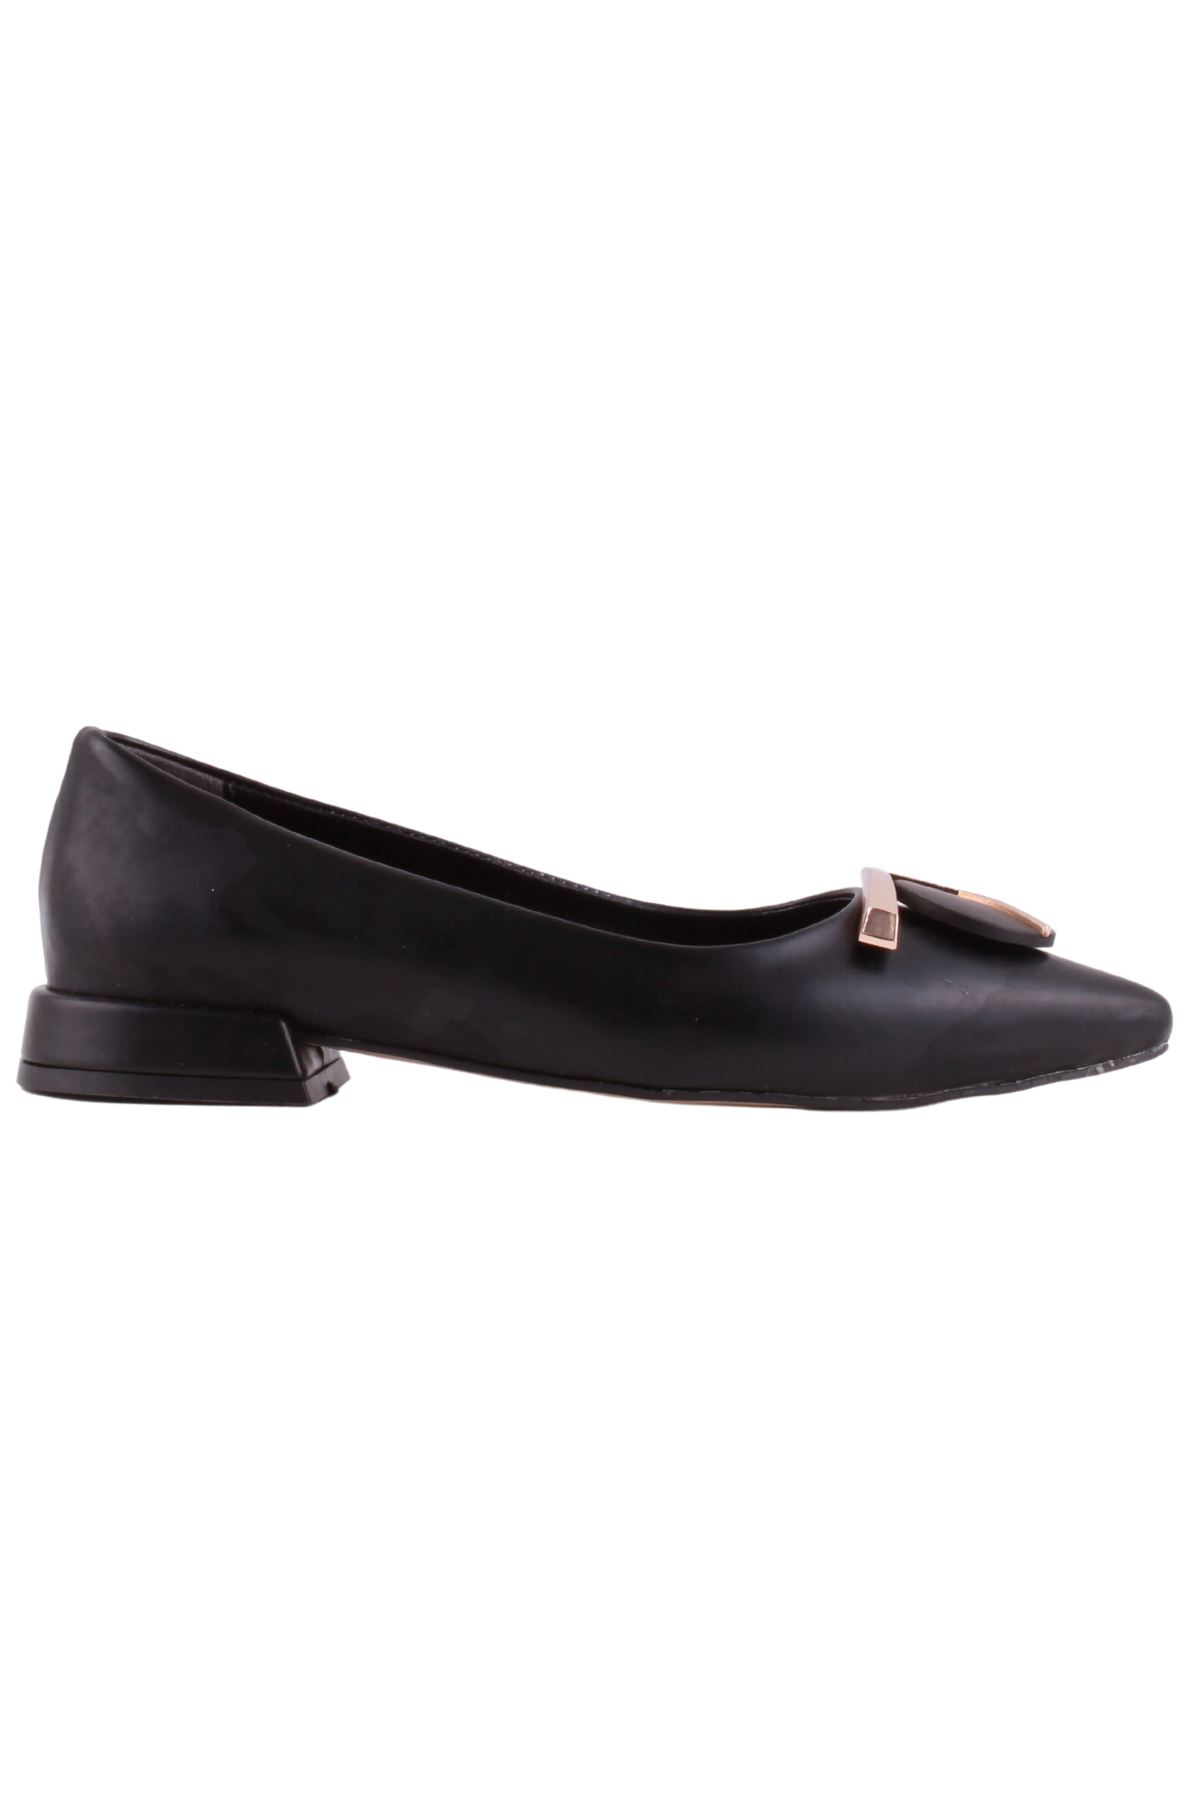 Kadın Siyah Klasik Ayakkabı - K23.36.2713